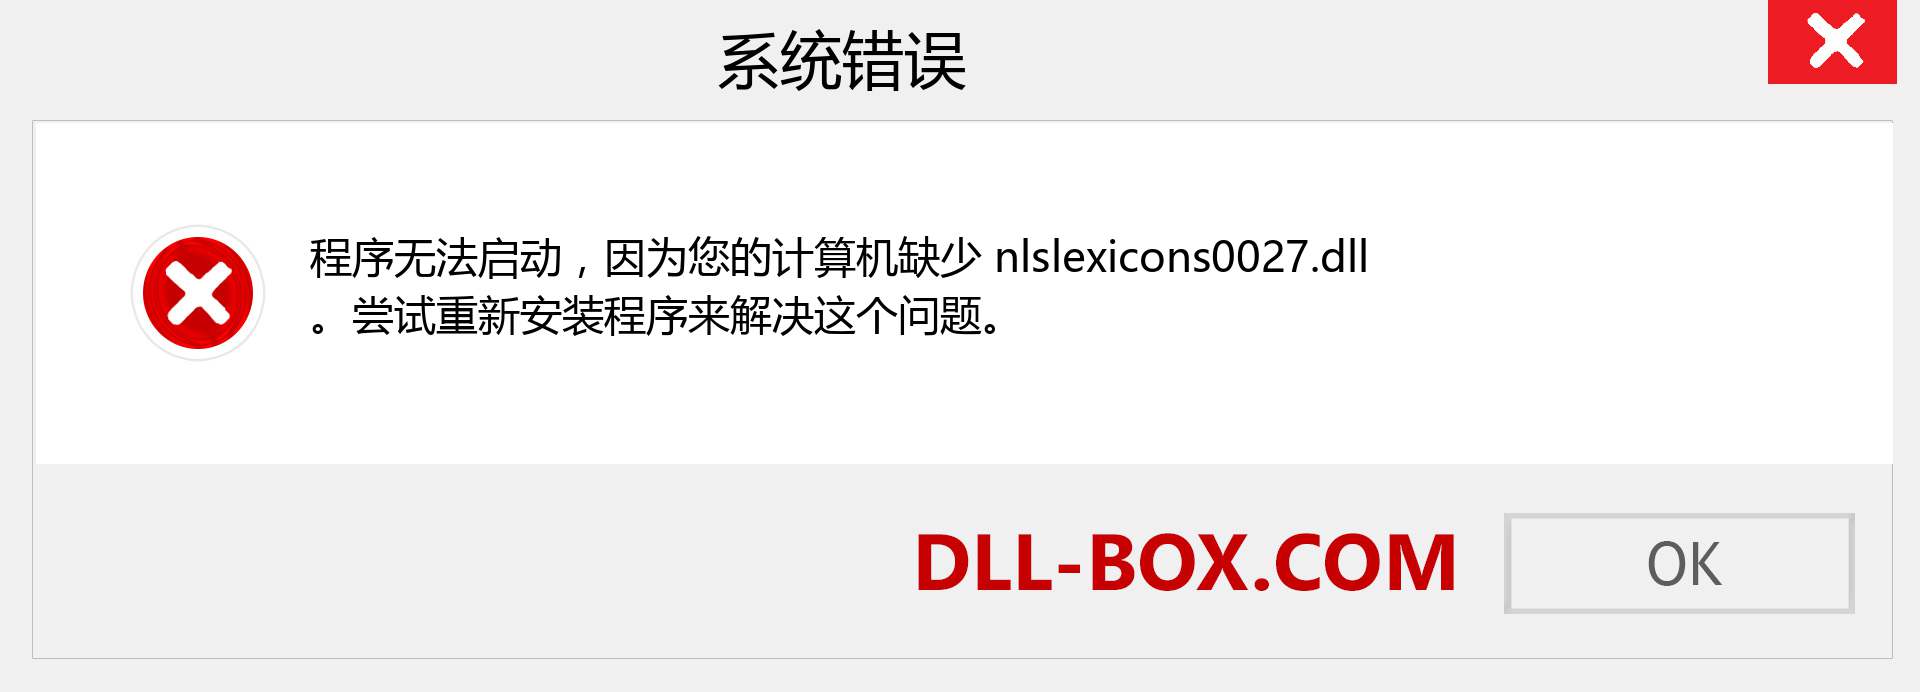 nlslexicons0027.dll 文件丢失？。 适用于 Windows 7、8、10 的下载 - 修复 Windows、照片、图像上的 nlslexicons0027 dll 丢失错误